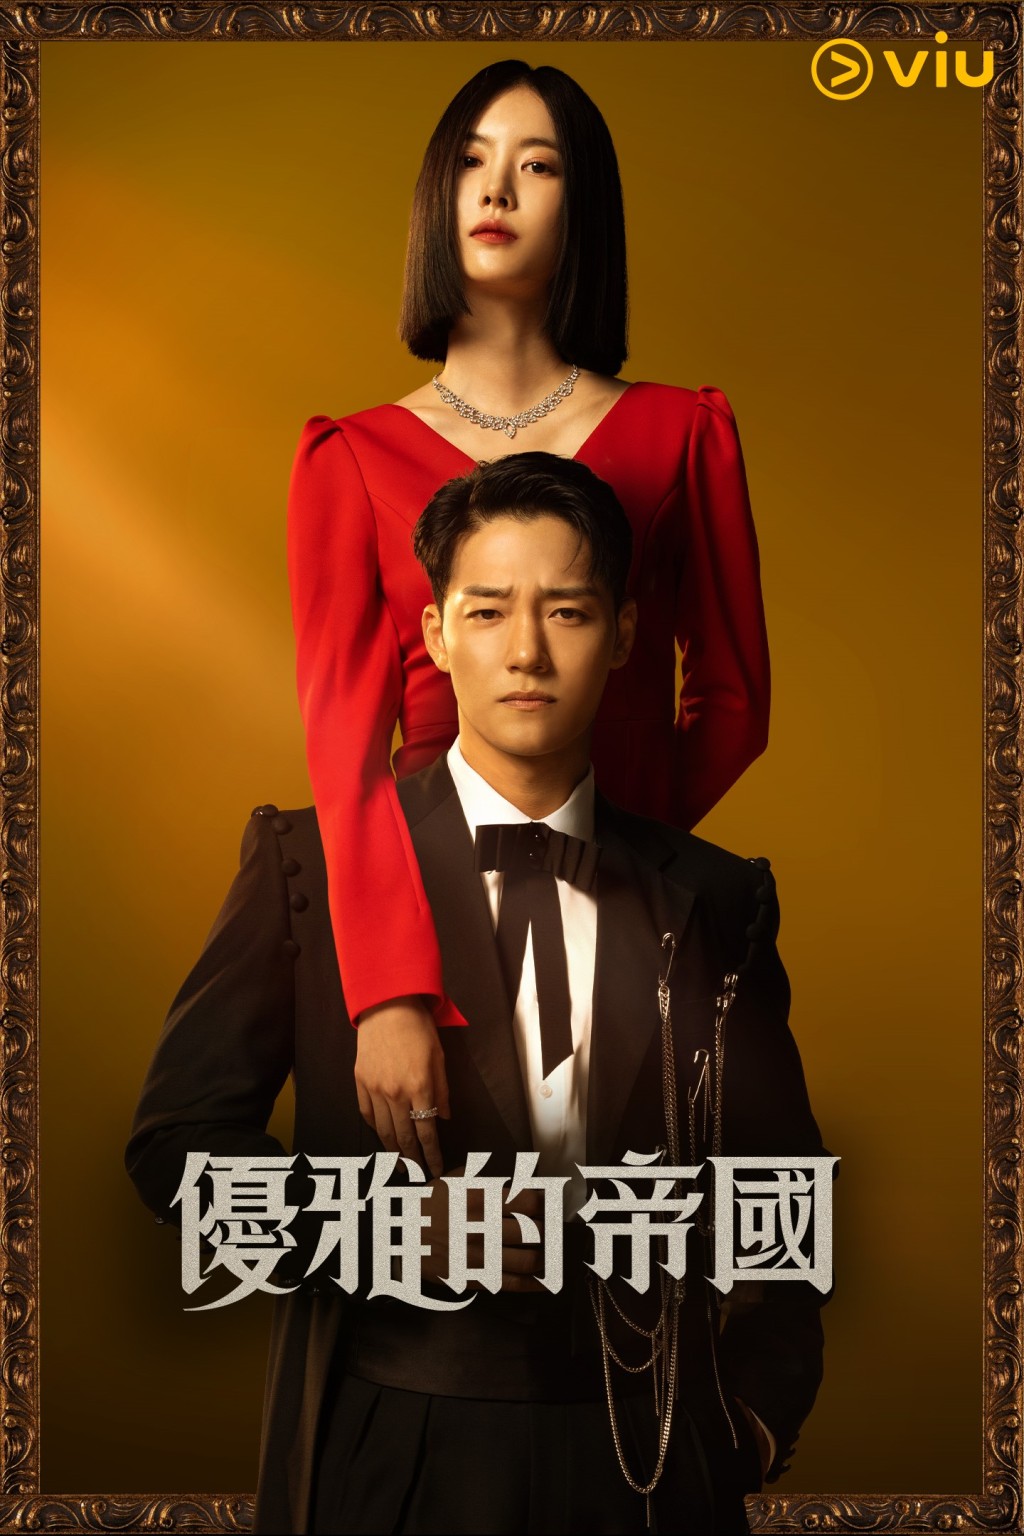 全新百集日日連續劇《優雅的帝國》逢星期二至六下午在「黃Viu」上架。